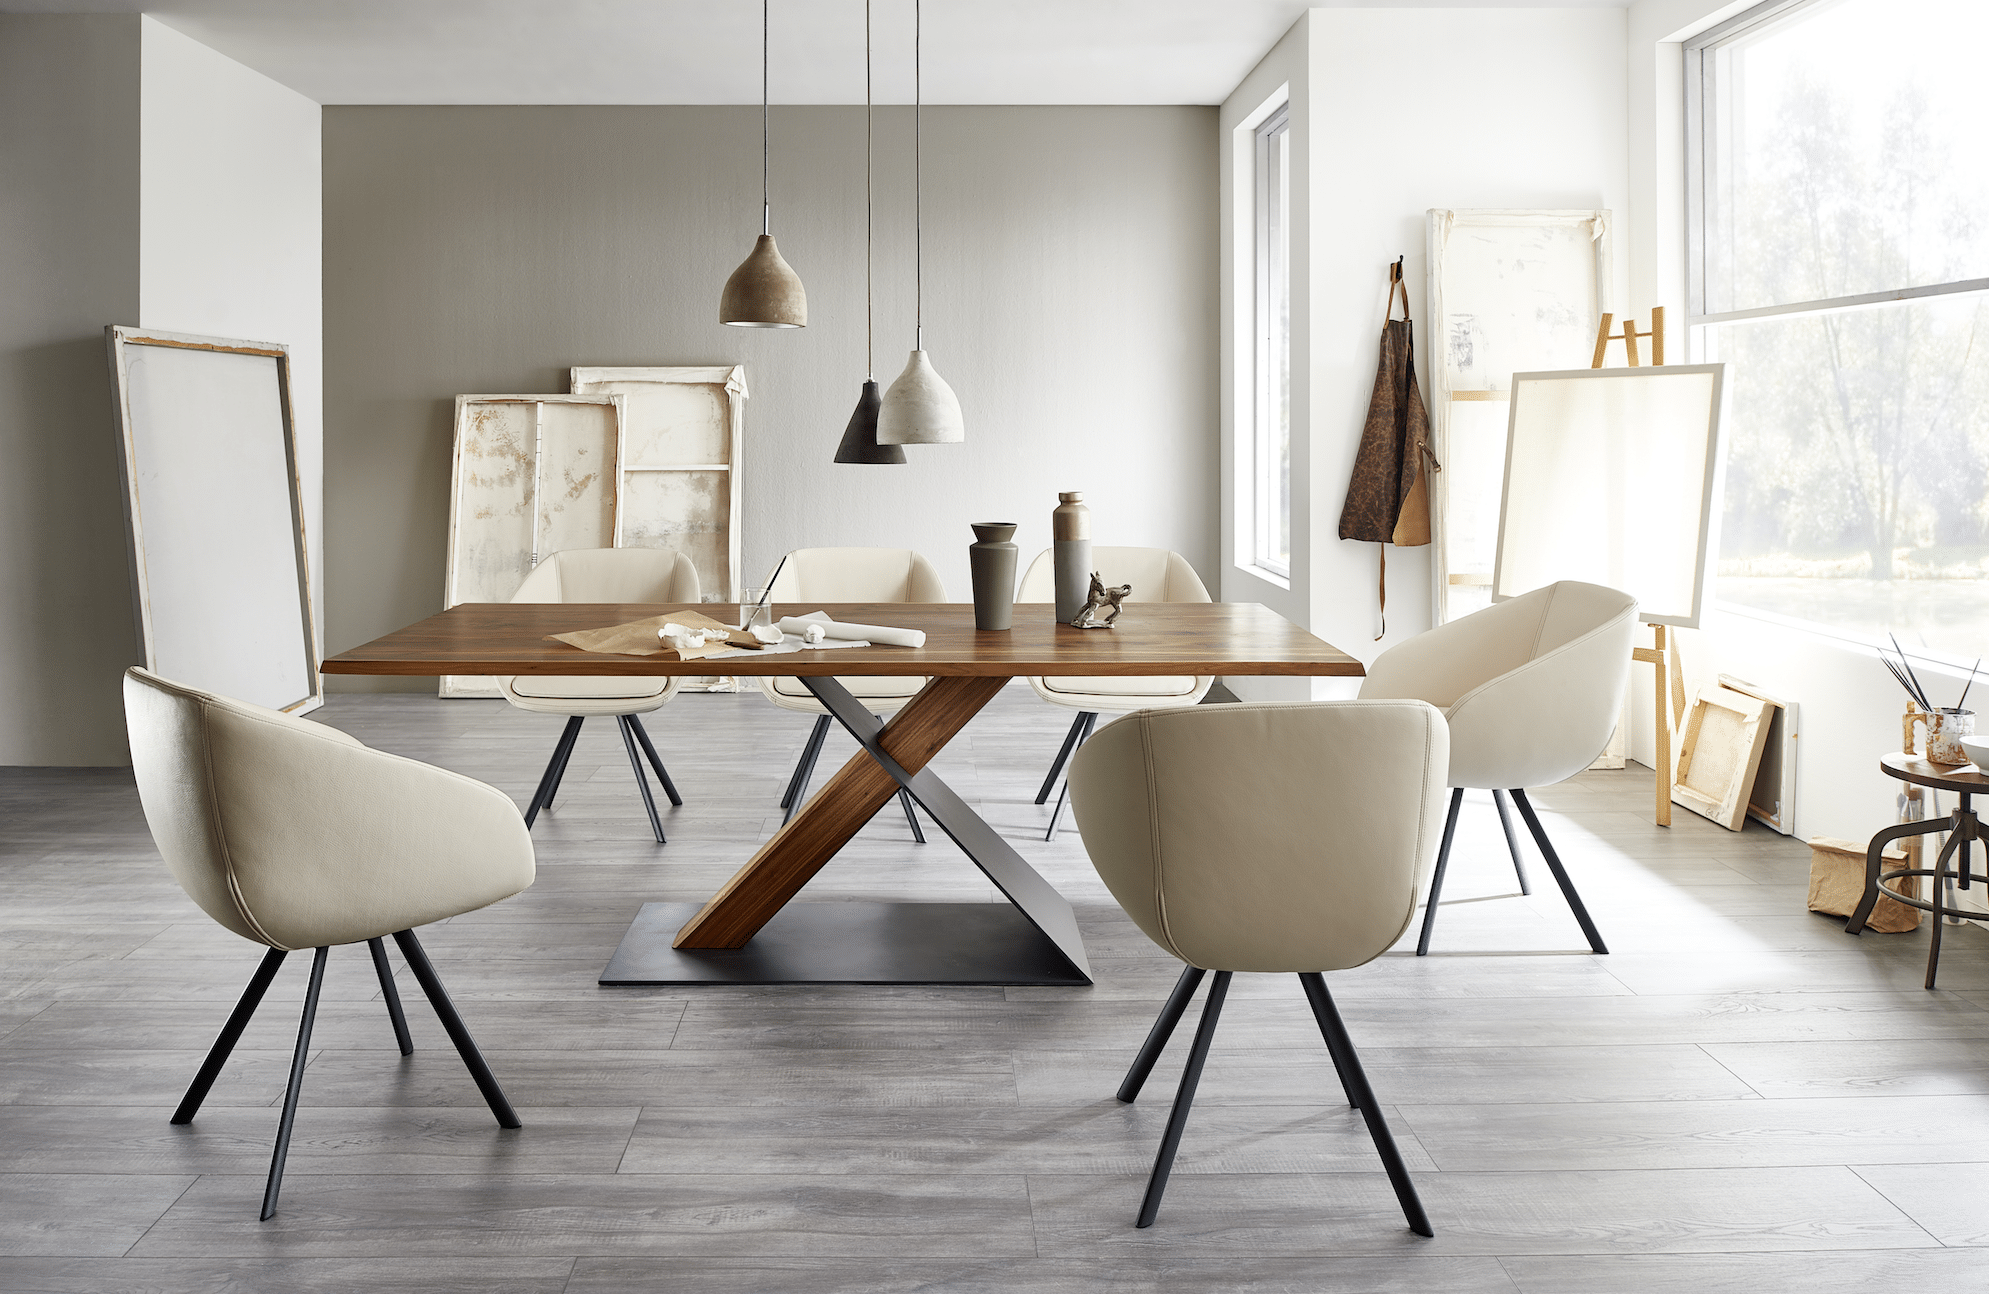 WOHNHAUS Grill & Ronacher zeigt ein Esszimmer mit cremefarbenen Stühlen und einem großen Tisch aus Holz und schwarzem Stahl von Wimmer Wohnkollektionen.